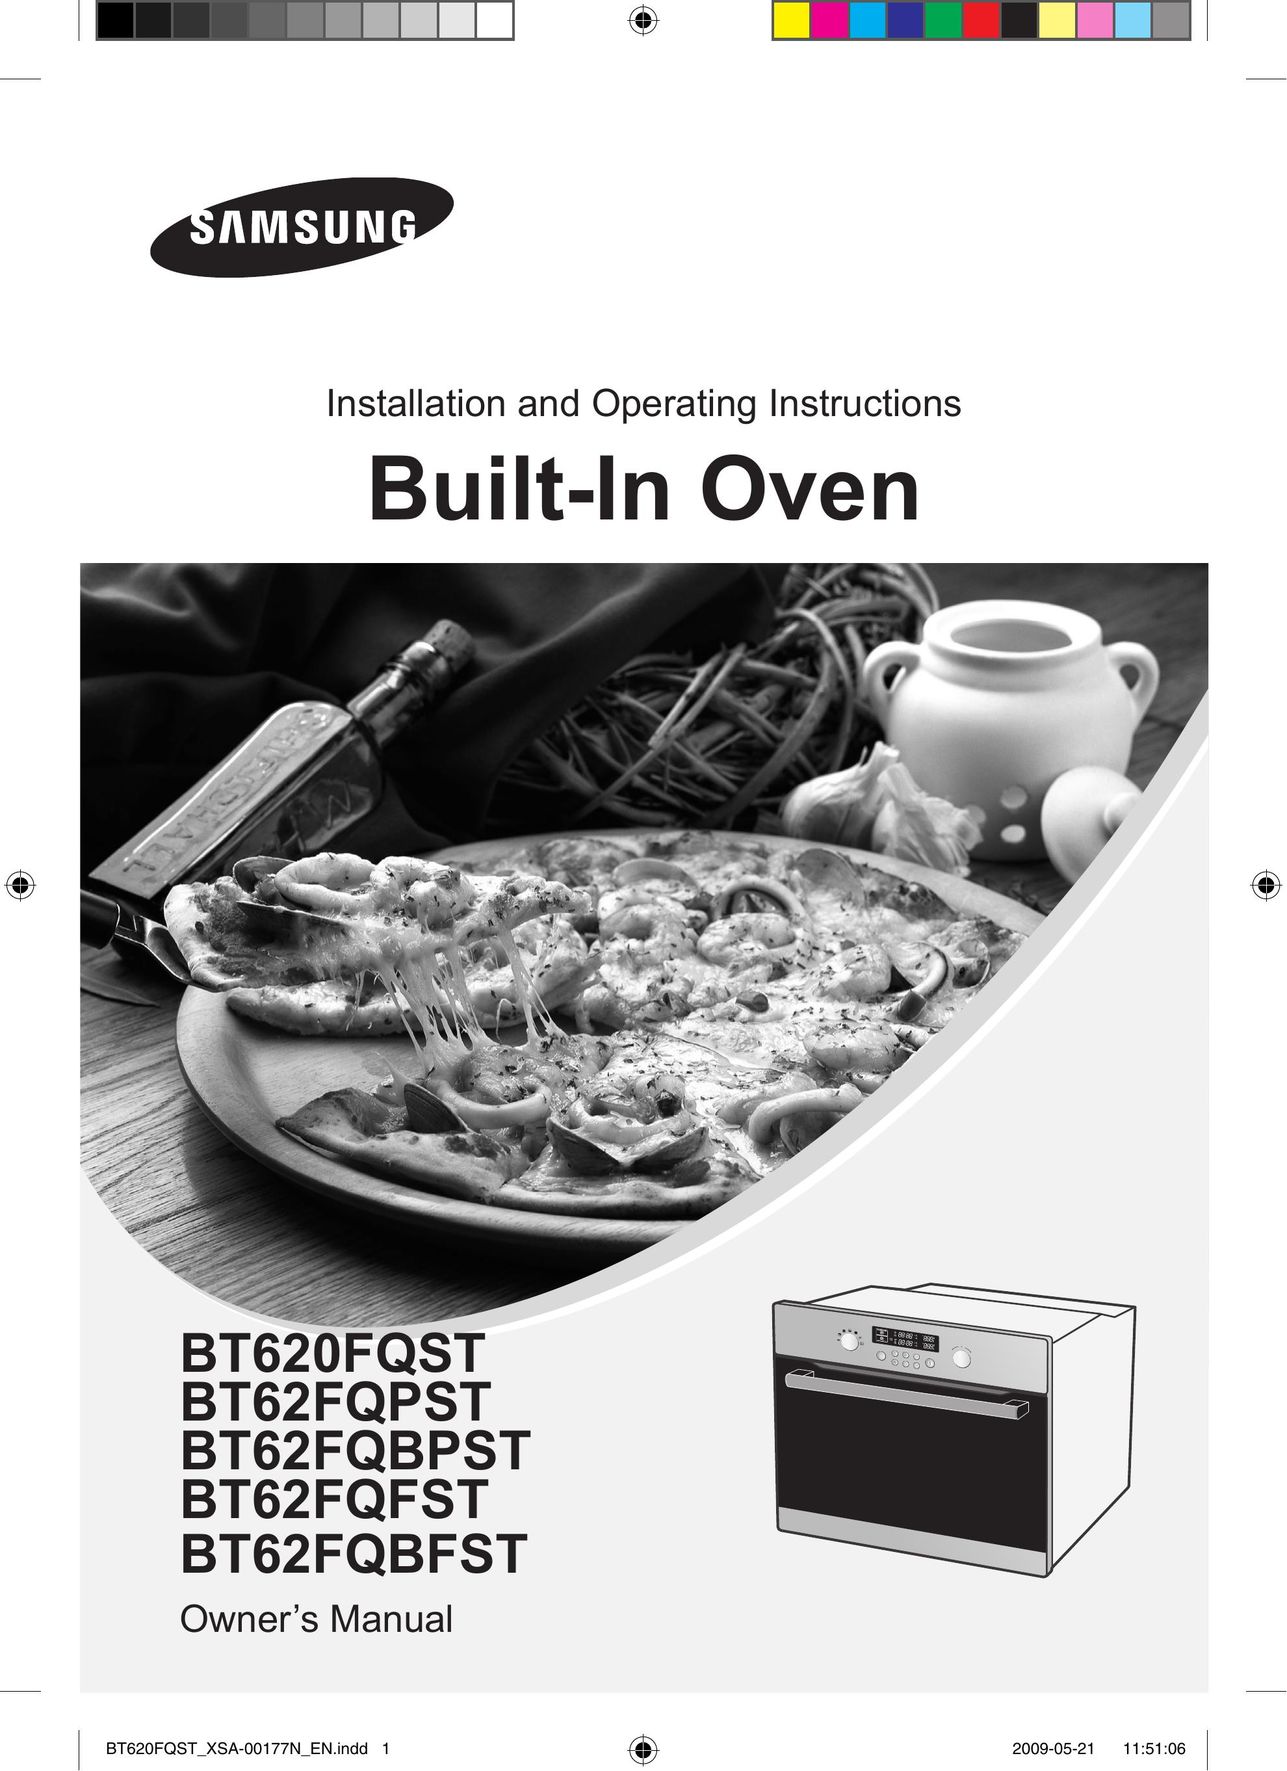 Samsung BT62FQFST Oven User Manual